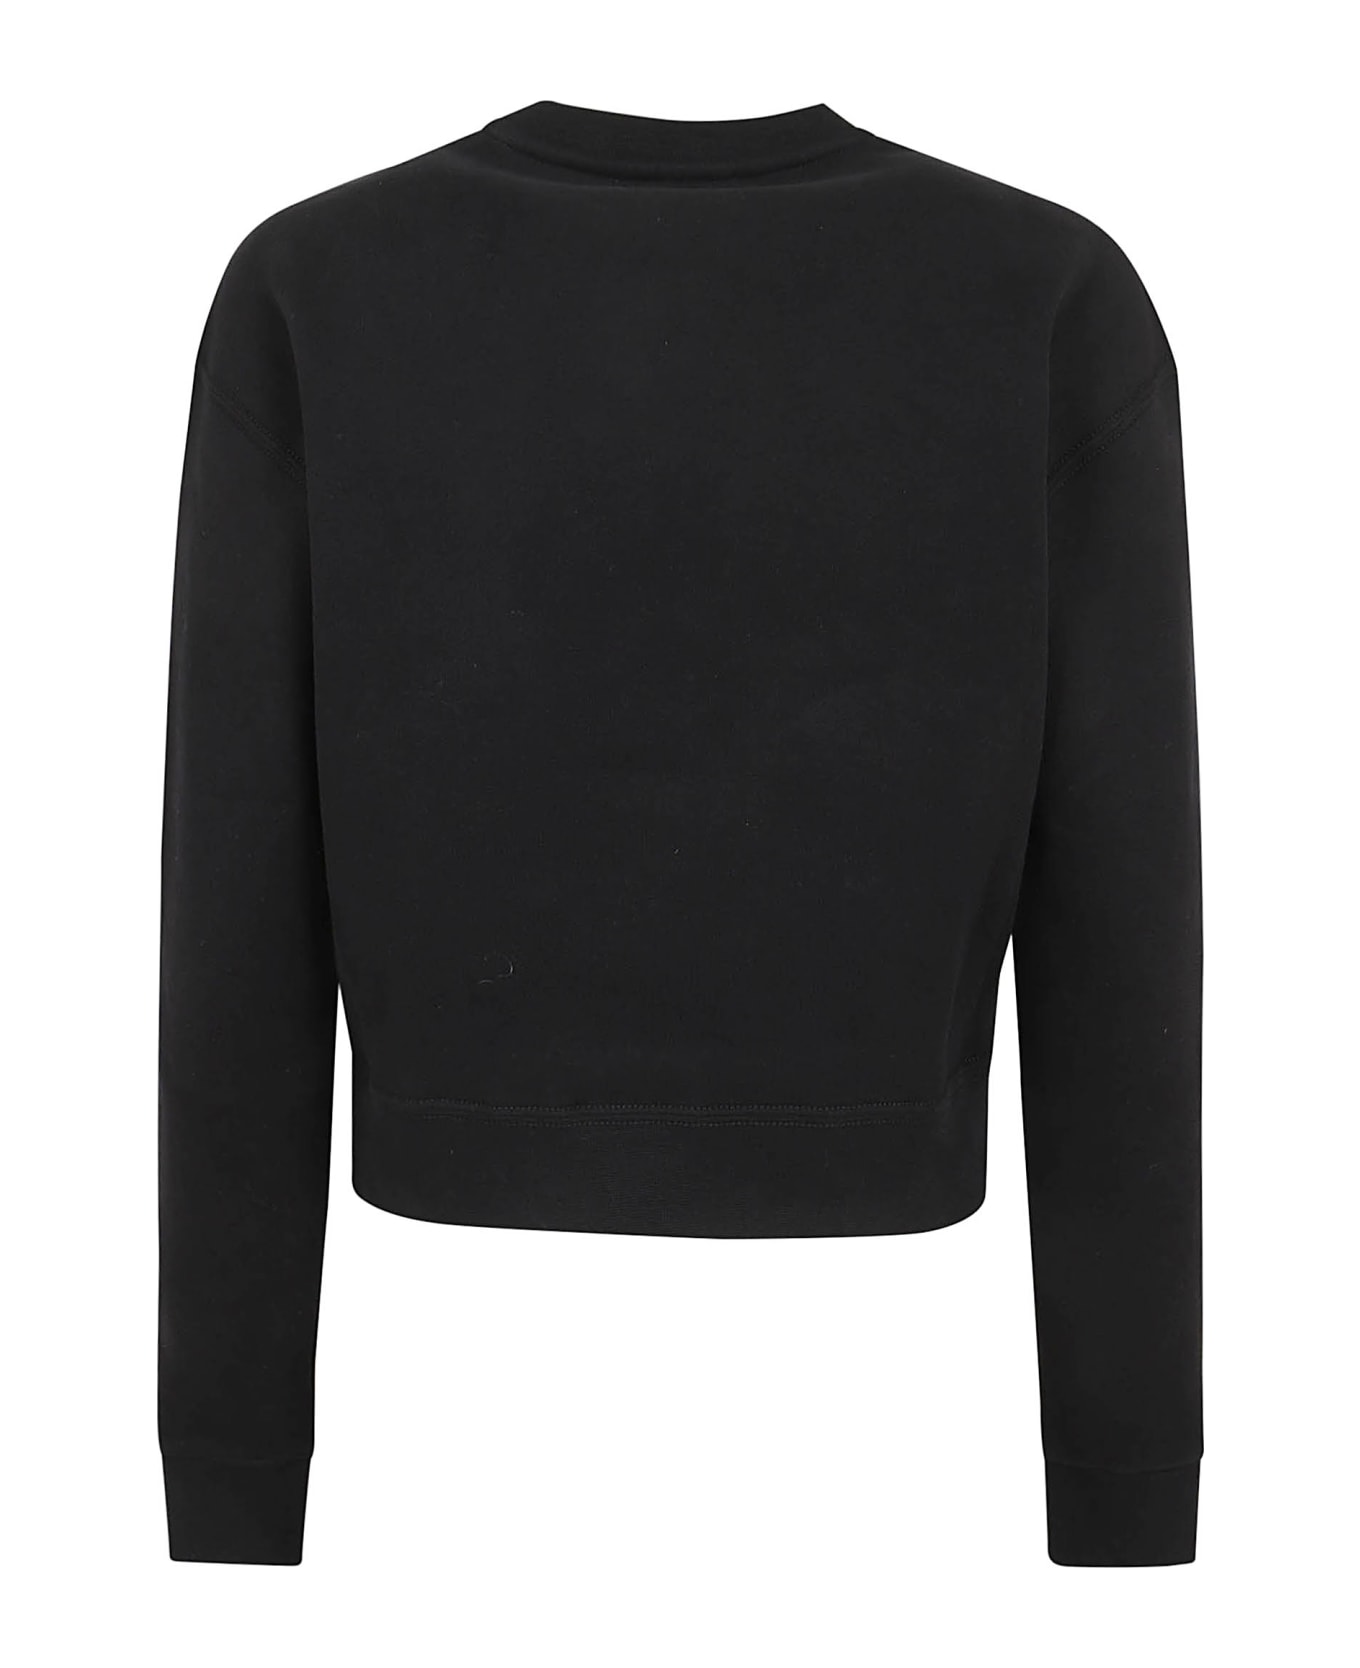 Ralph Lauren Foil Rl Cn-long Sleeve-pullover - Black